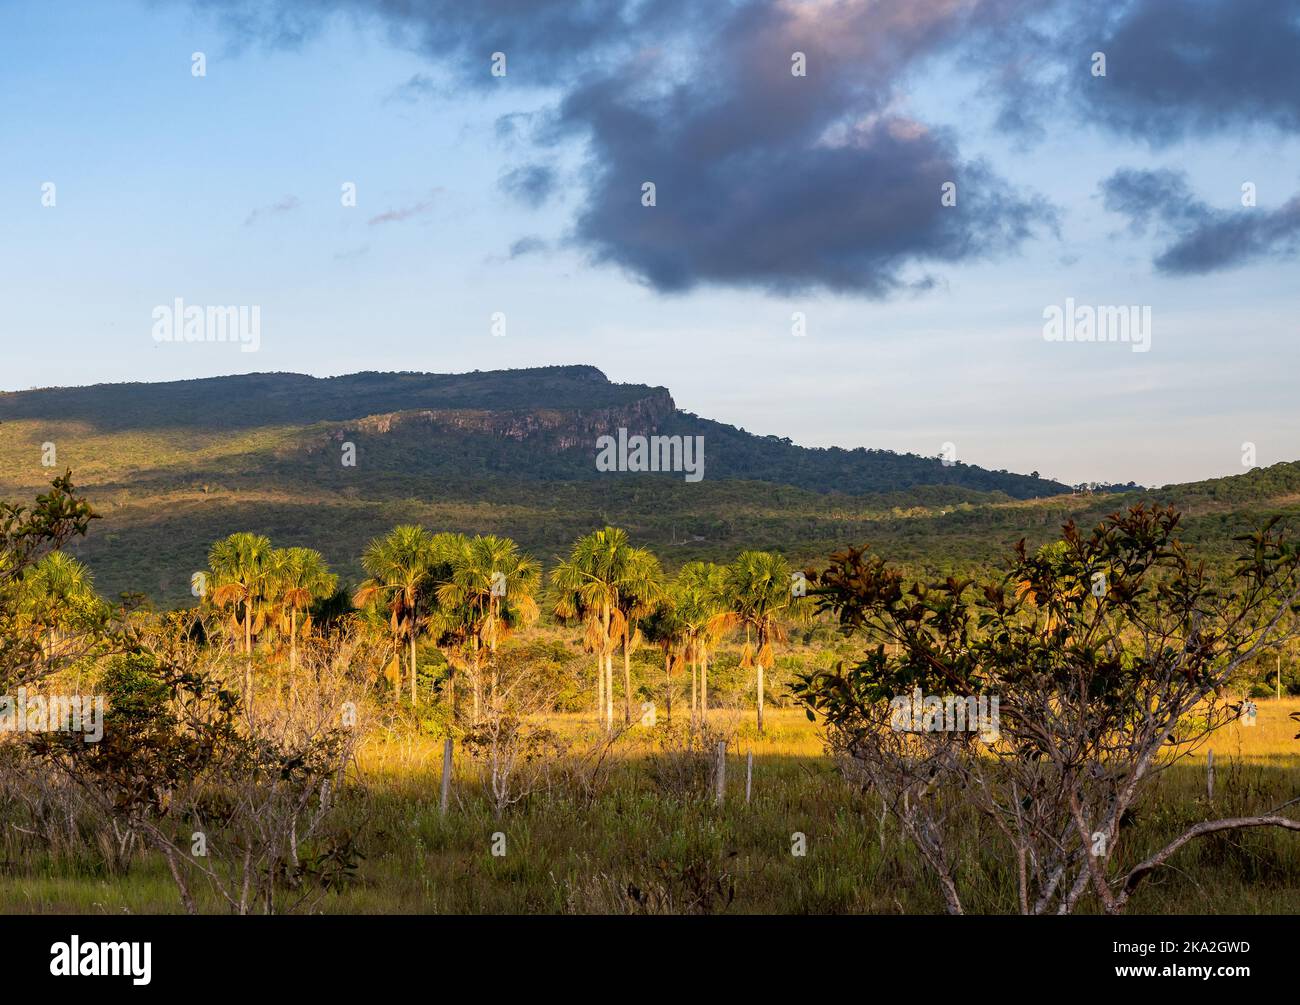 Les montagnes à sommet plat de Tepui sont composées de grès de quartz précambrien. Tepequem, Etat de Roraima, Brésil. Banque D'Images